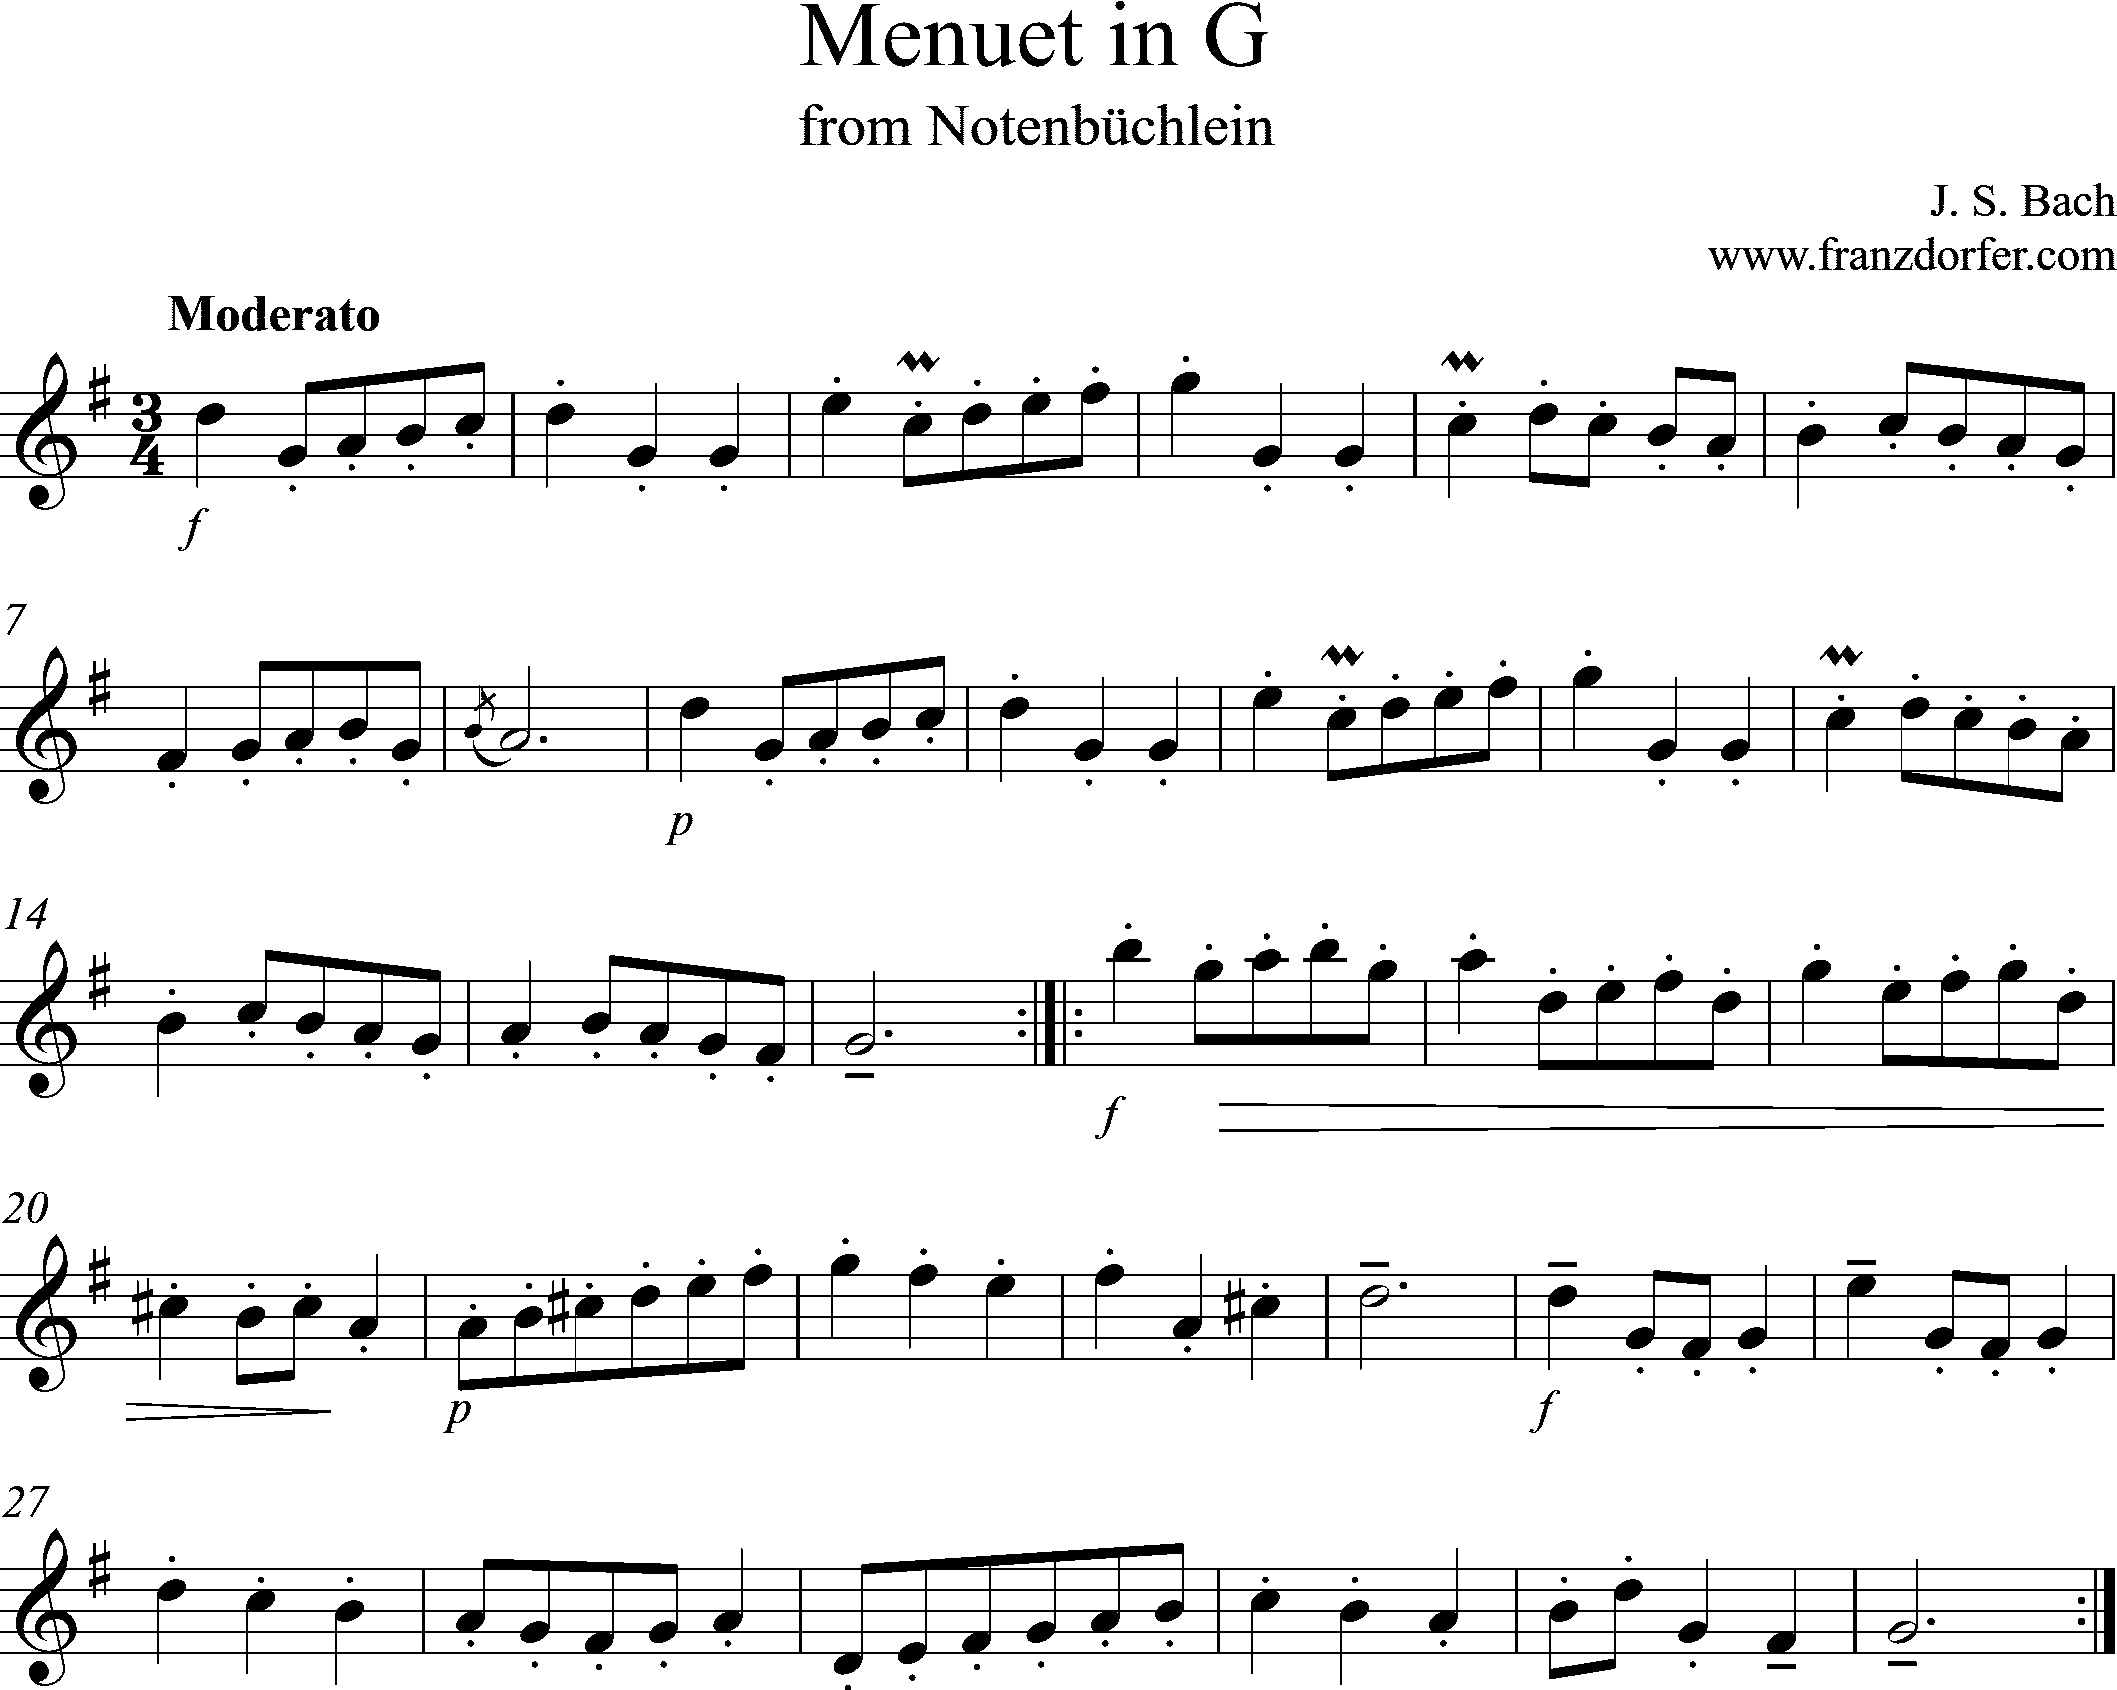 Solostimme, Menuet in G, Notenbüchlein, Bach